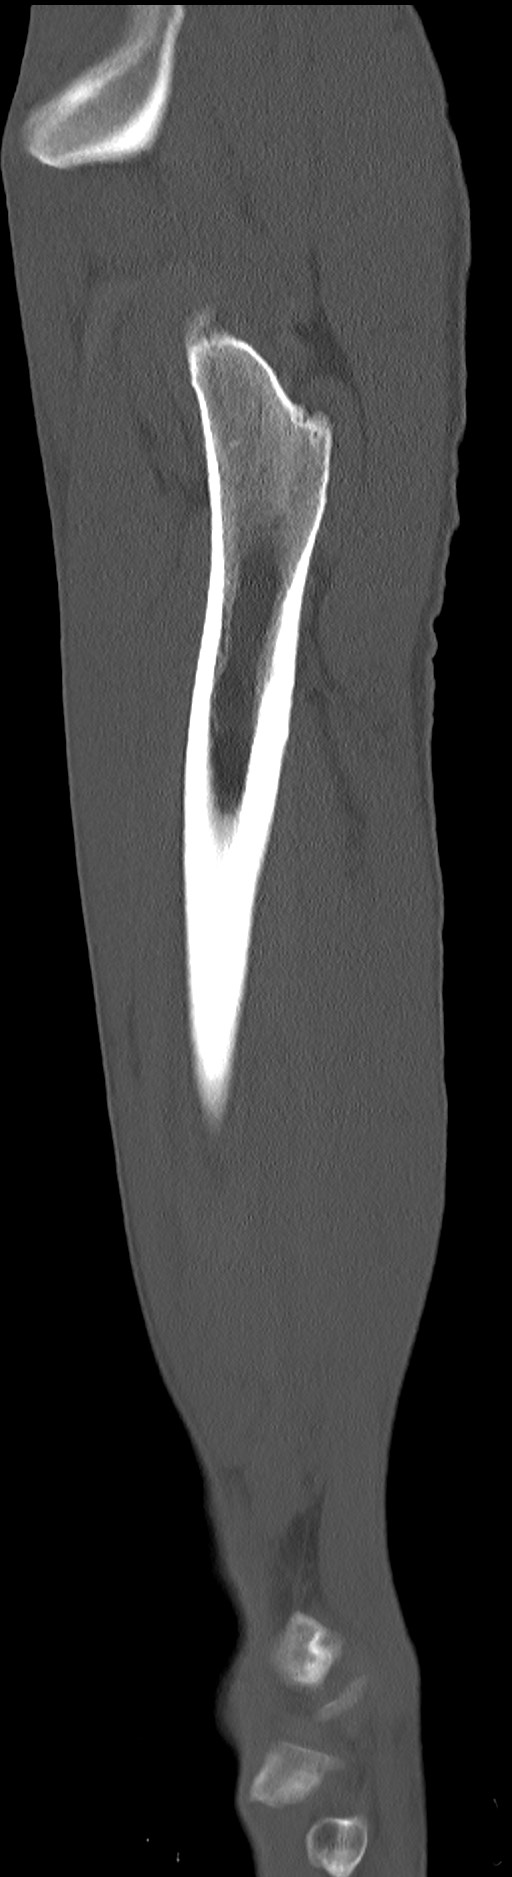 Chronic osteomyelitis (with sequestrum) (Radiopaedia 74813-85822 C 22).jpg